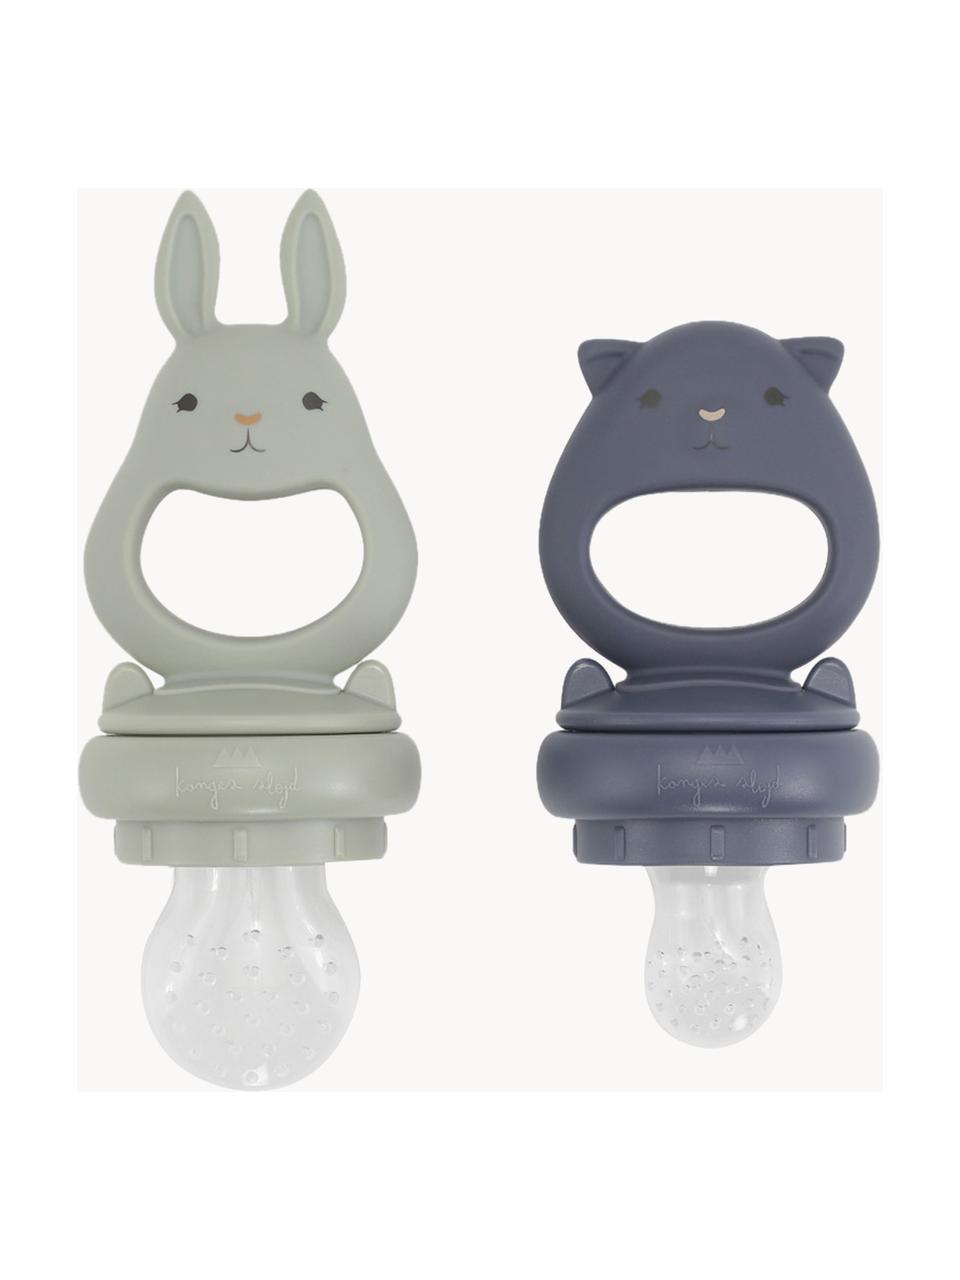 Fruitzuiger Bunny, set van 2, Silicone, Lichtgrijs, grijsblauw, Set met verschillende formaten